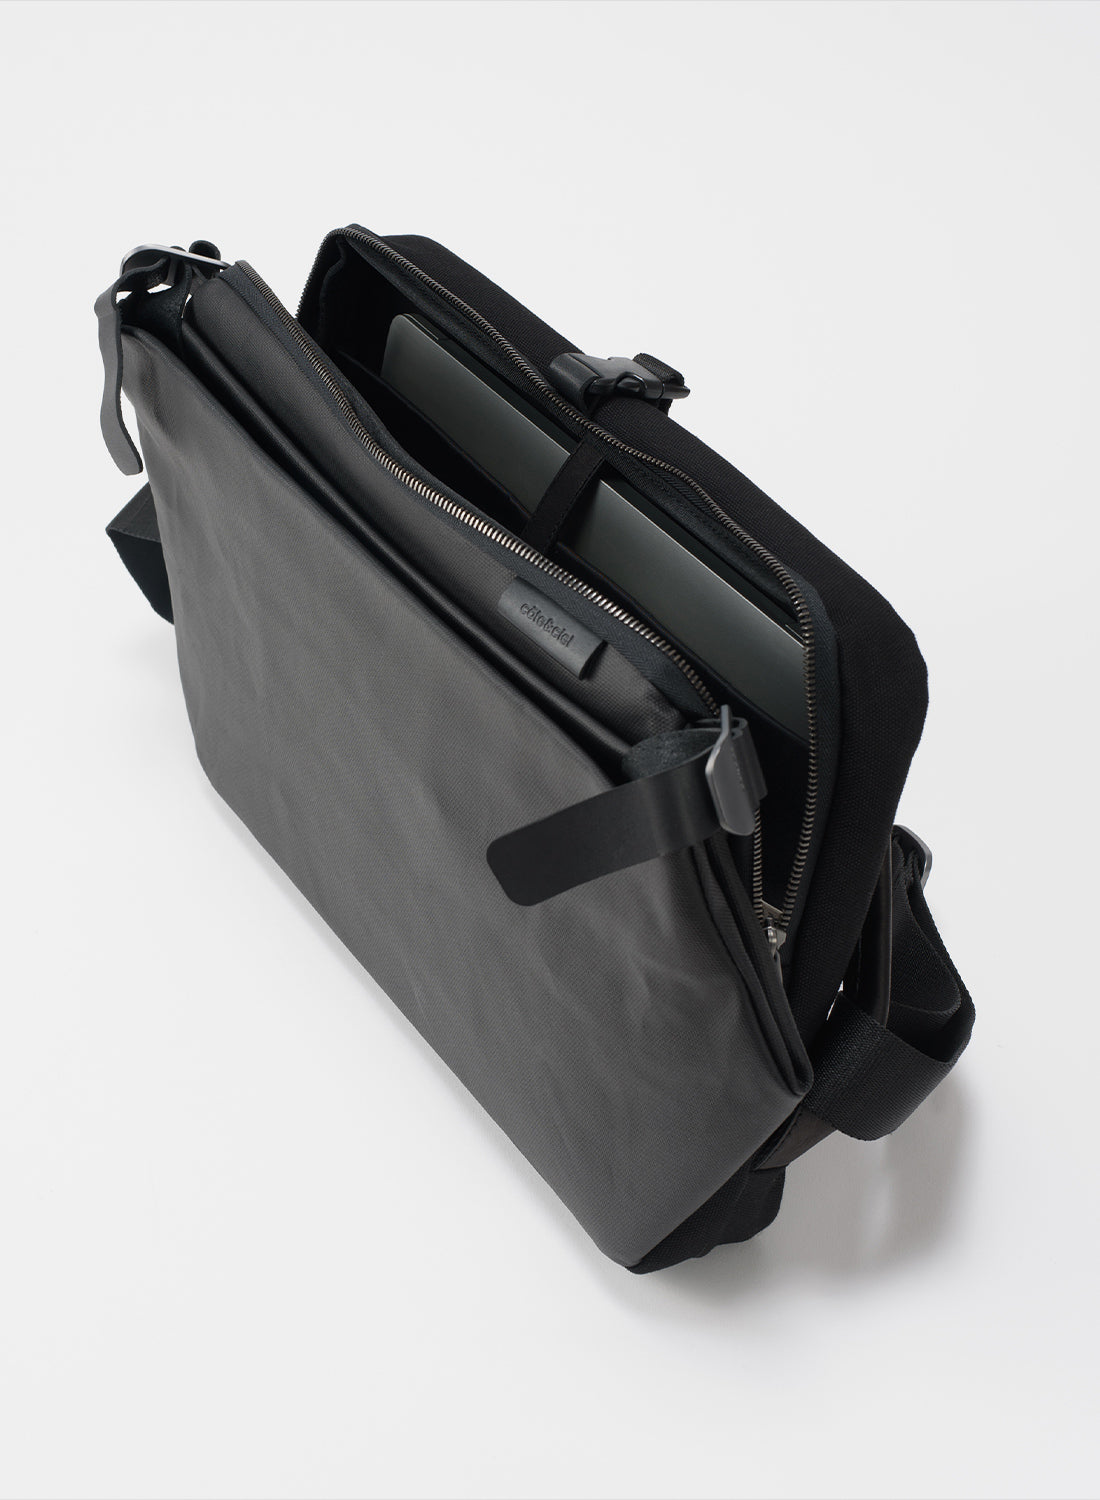 Cote & Ciel Men's Riss Coated Canvas Messenger Bag, Black, One Size